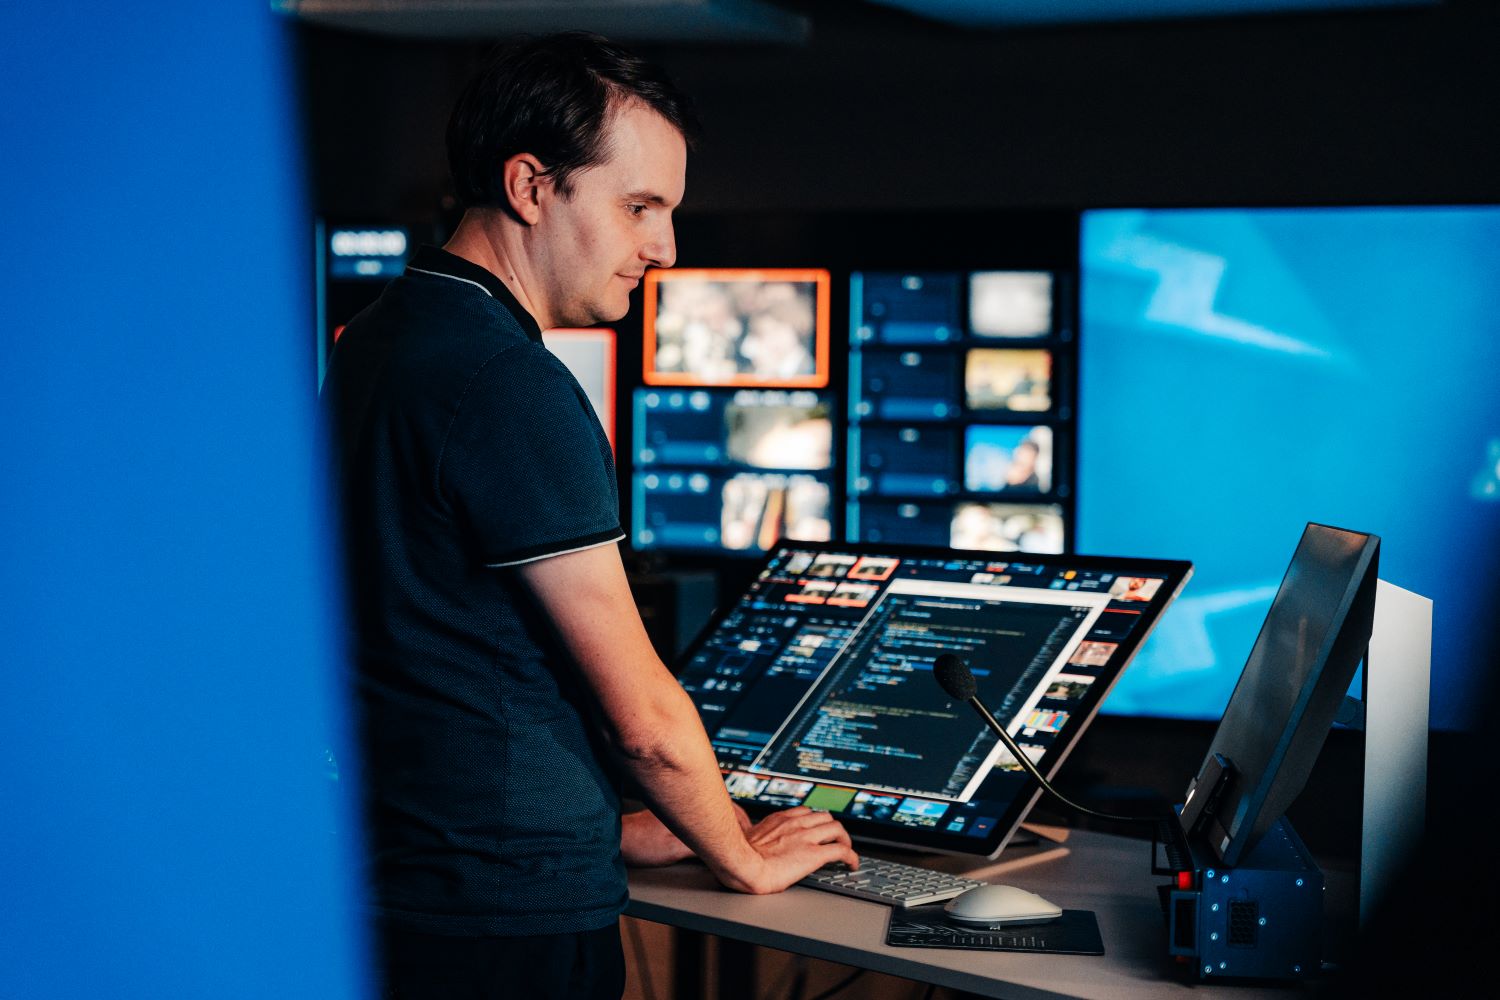 Un homme est debout dans un studio de la RTBF. Les deux mains posées sur le clavier, il regarde un des deux écrans de travail devant lui. Plusieurs autres écrans lumineux sont visibles en arrière-plan.